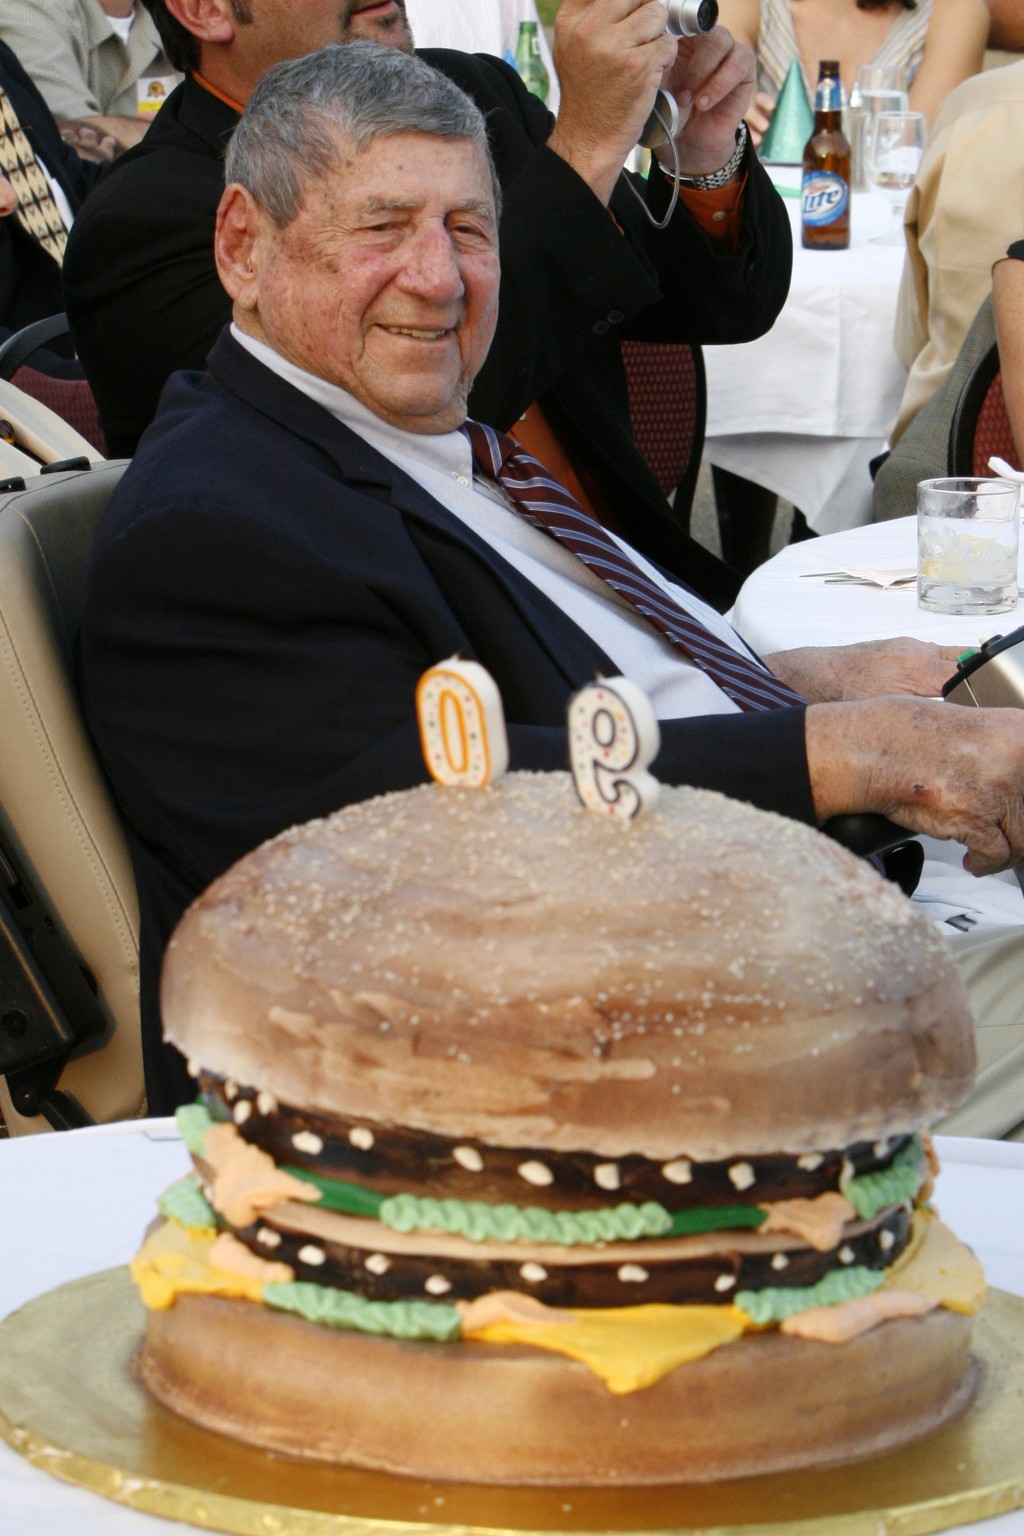 已故巨无霸发明者德利加蒂90岁时以「特大巨无霸蛋糕」庆祝生日。 美联社